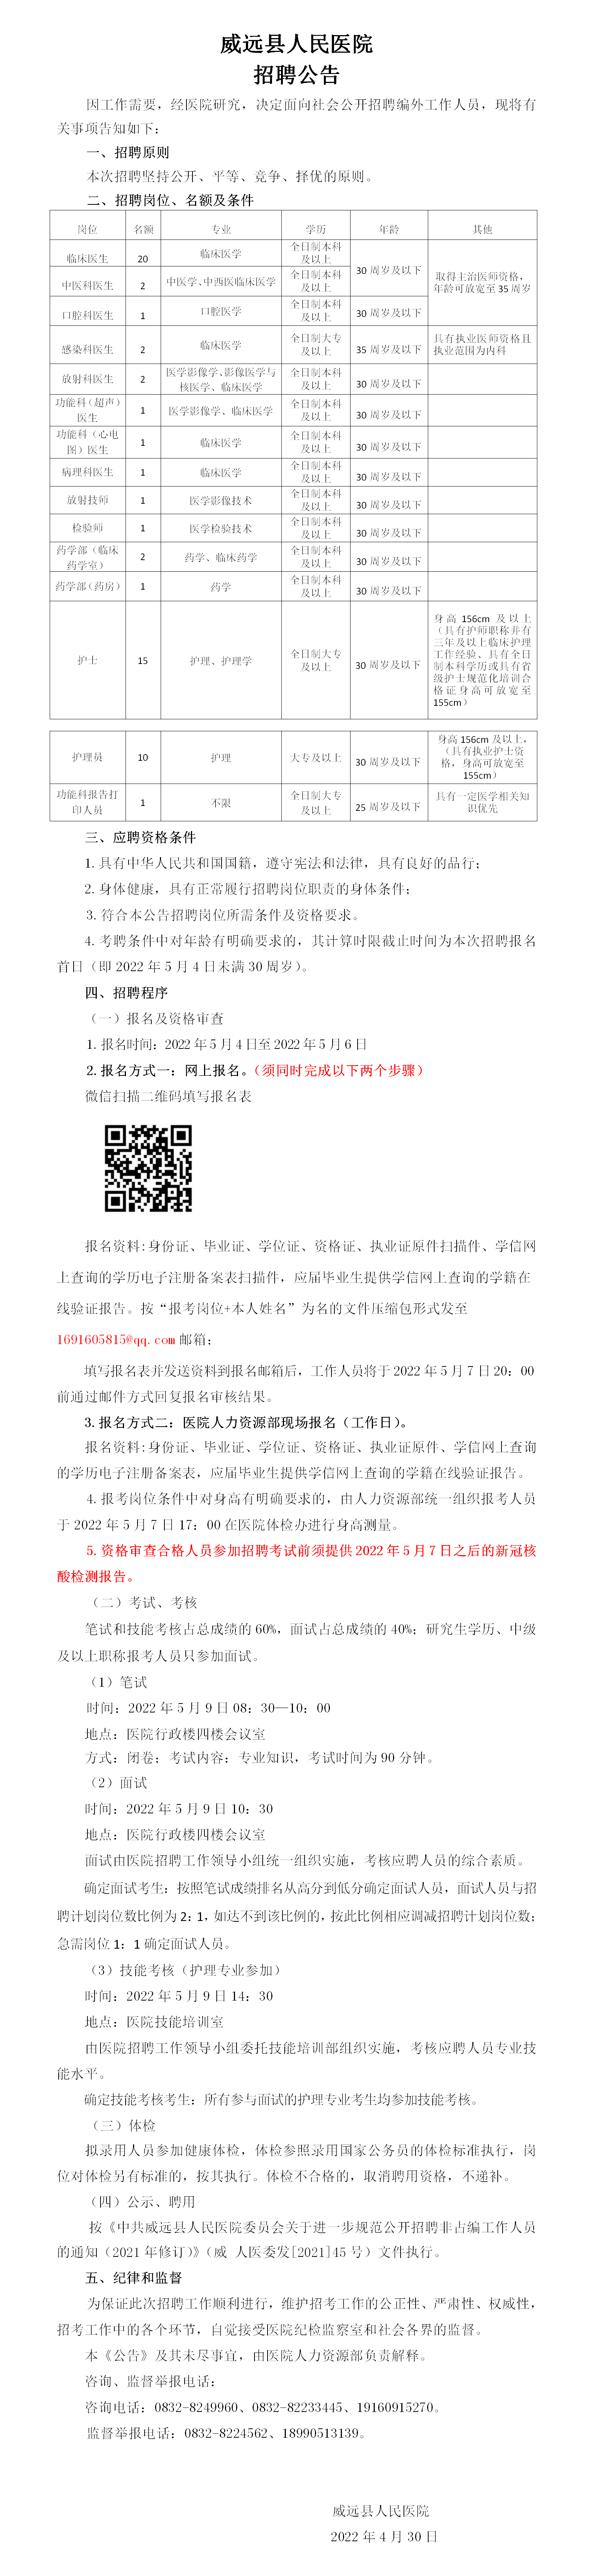 威远县人民医院招聘公告(1111111111111111.png